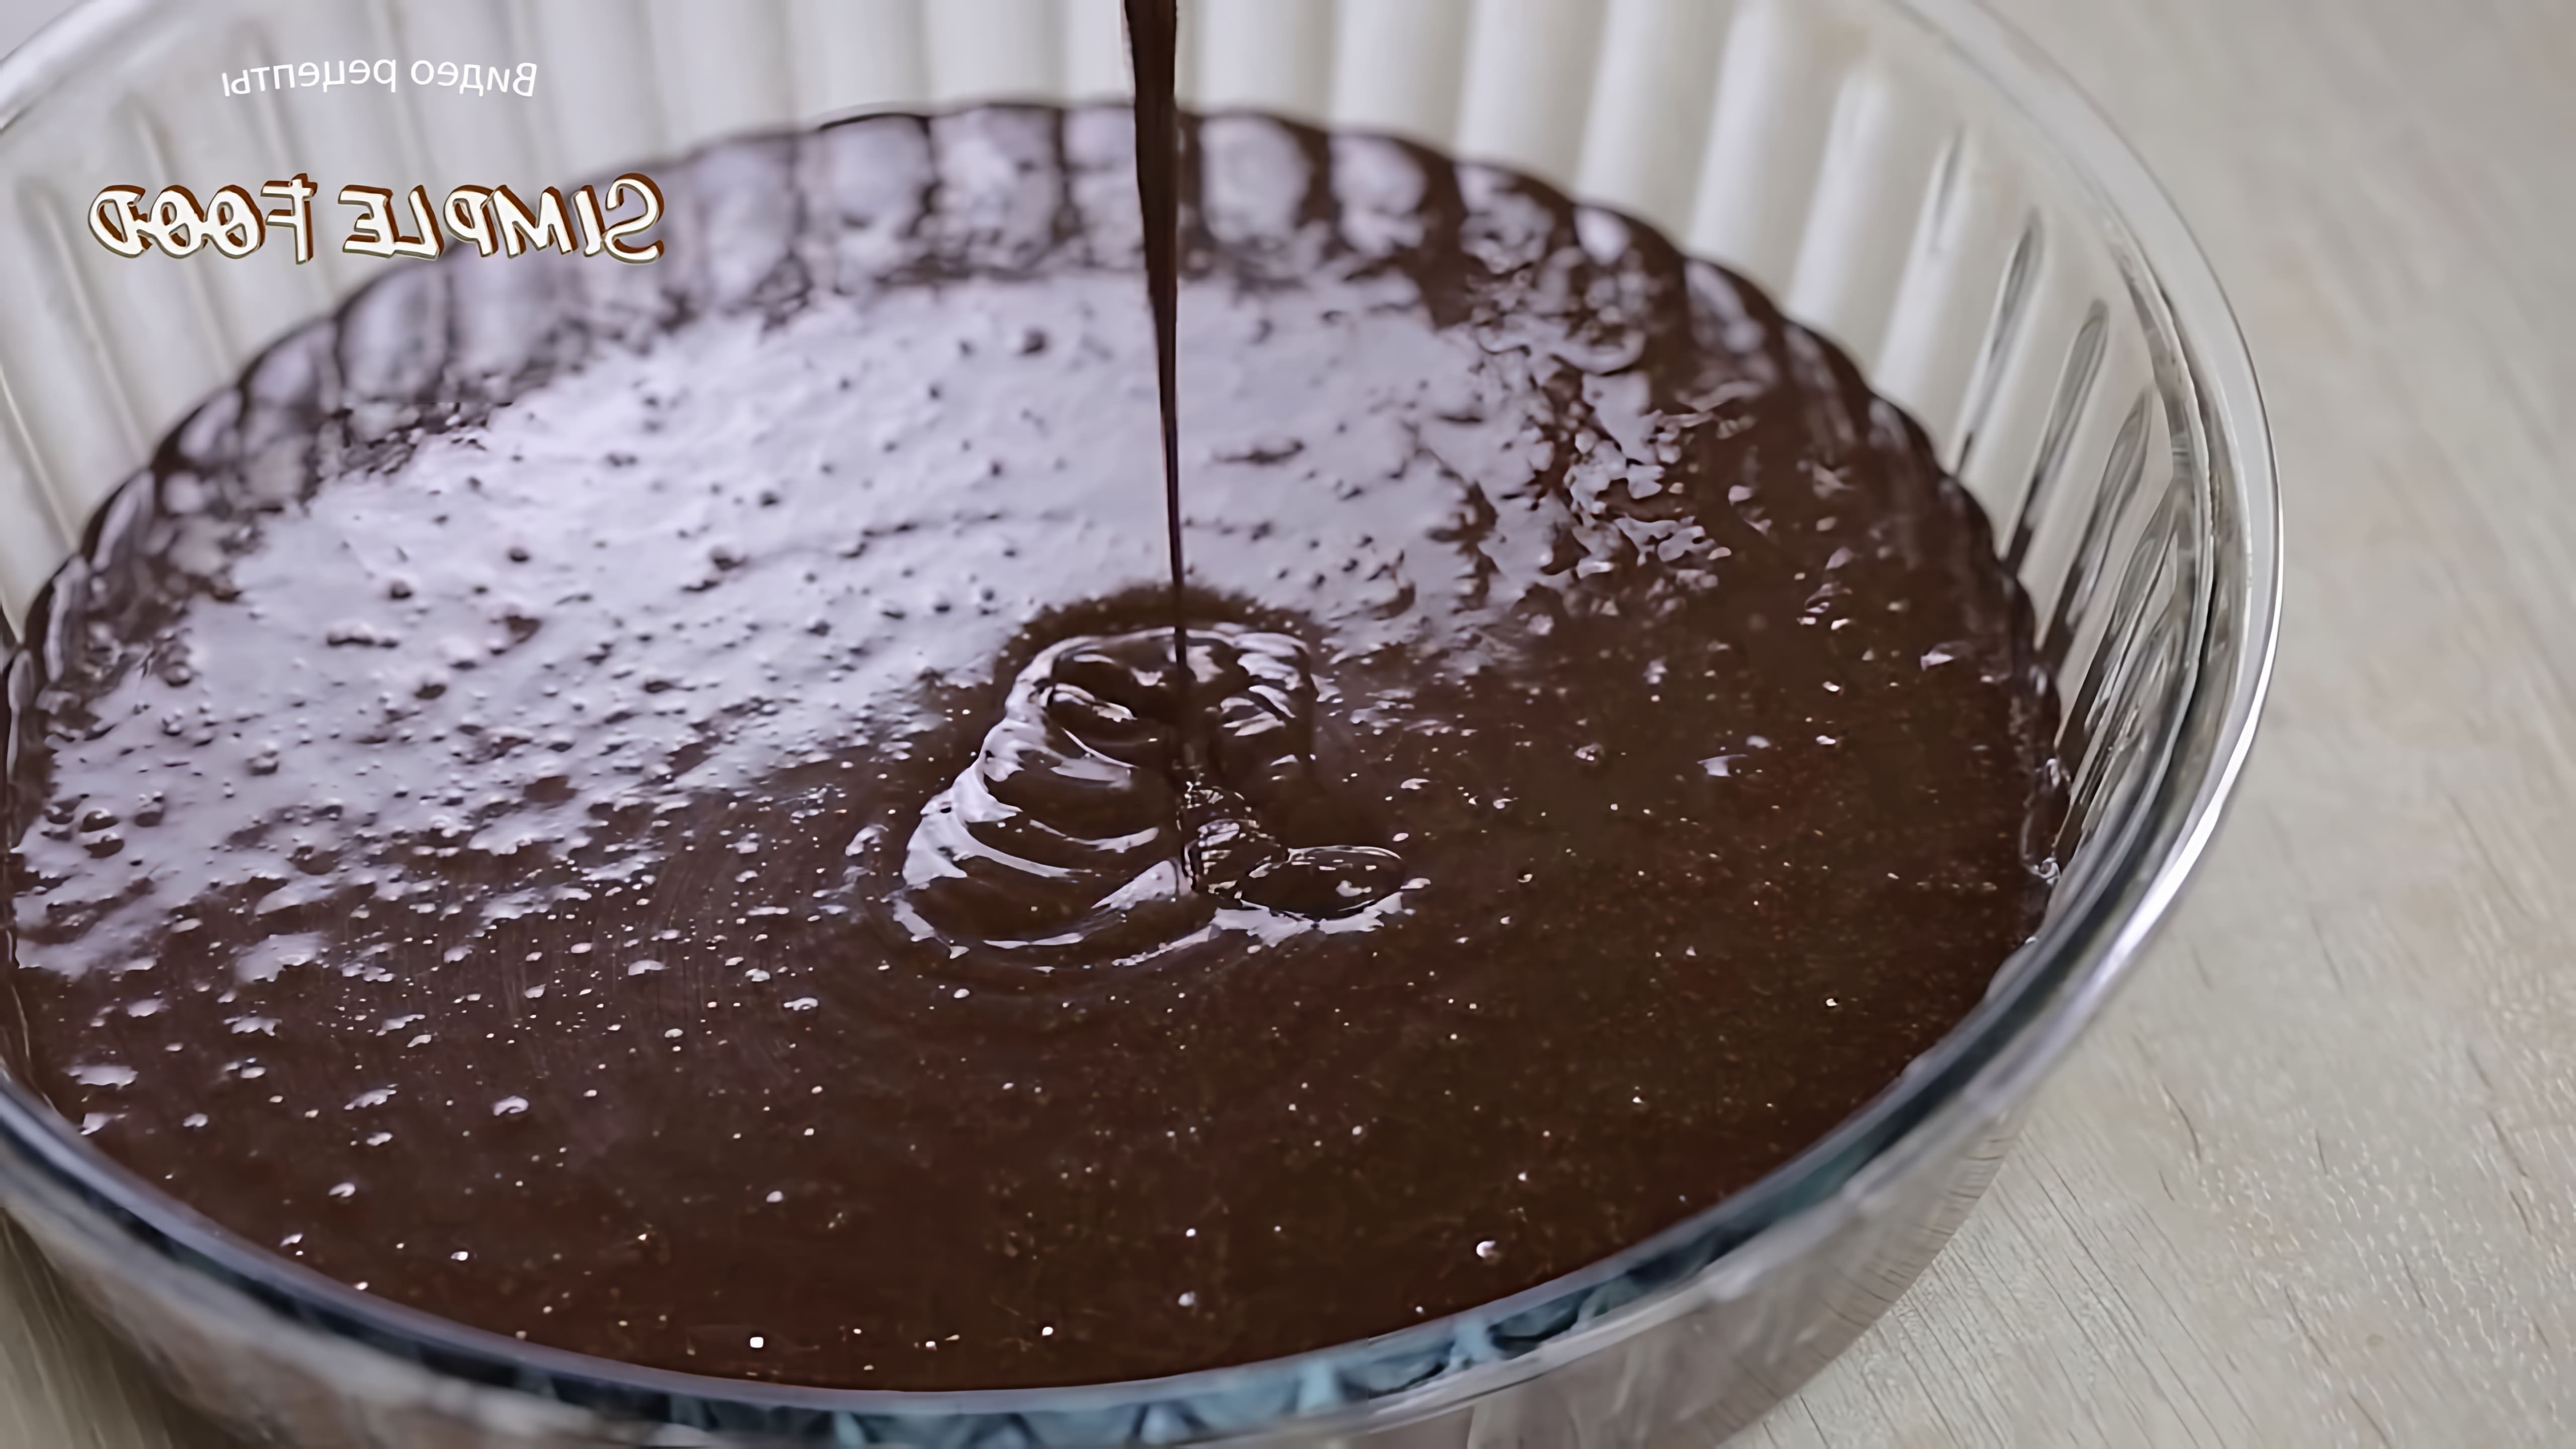 В этом видео демонстрируется рецепт шоколадного пирога с ганашем